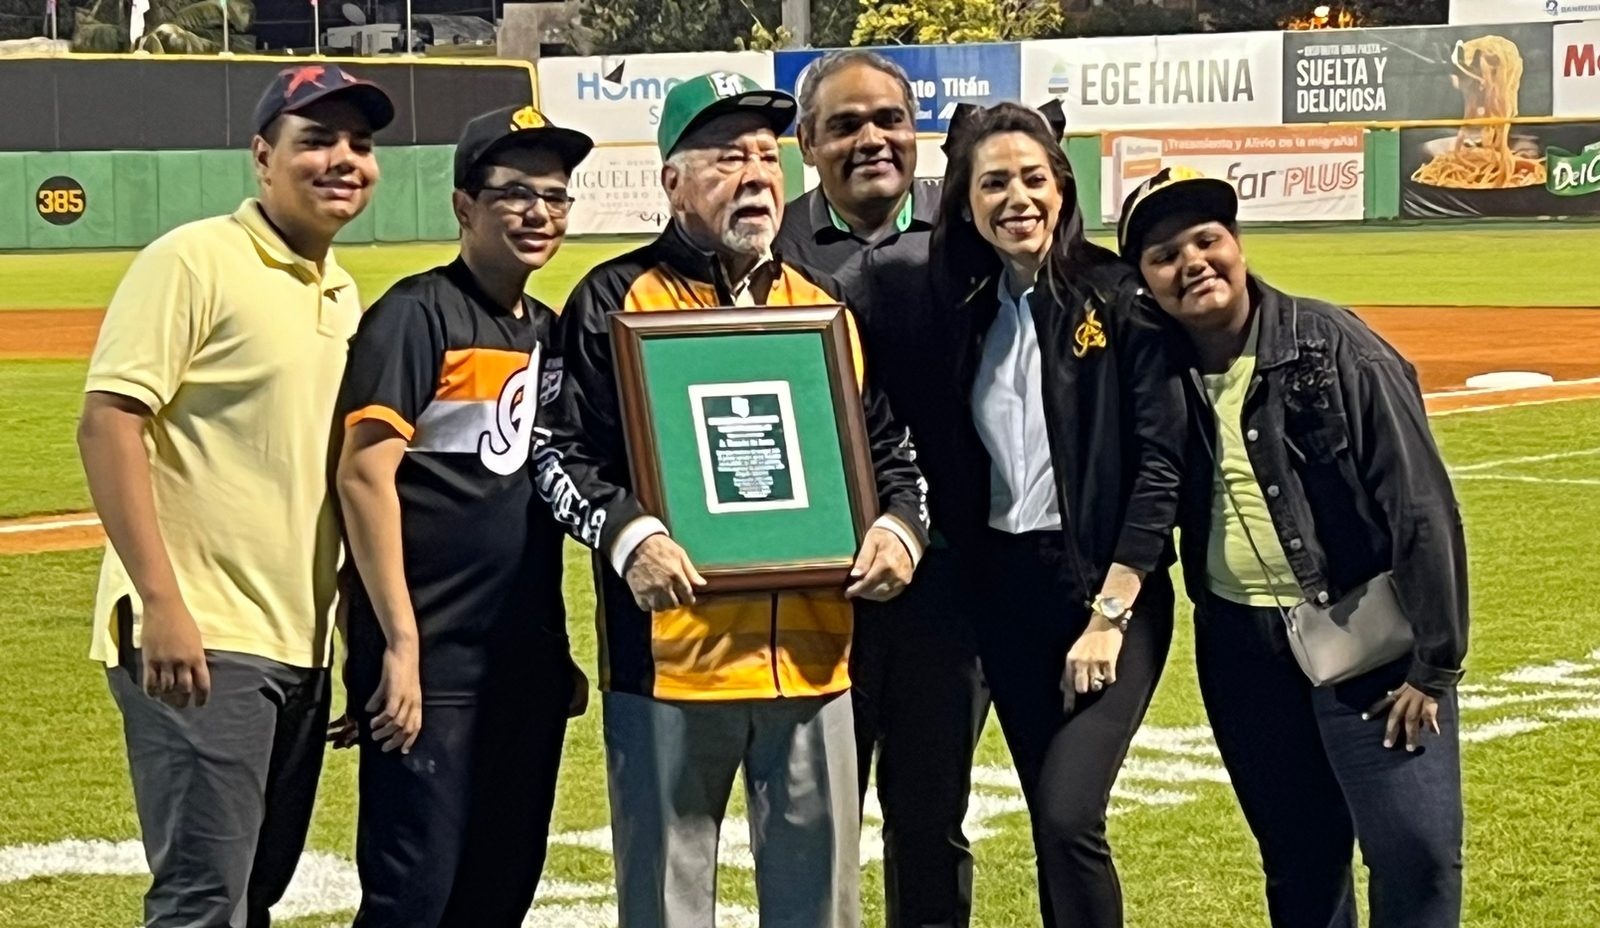 El nuevo uniforme de los Padres de San Diego: un homenaje a